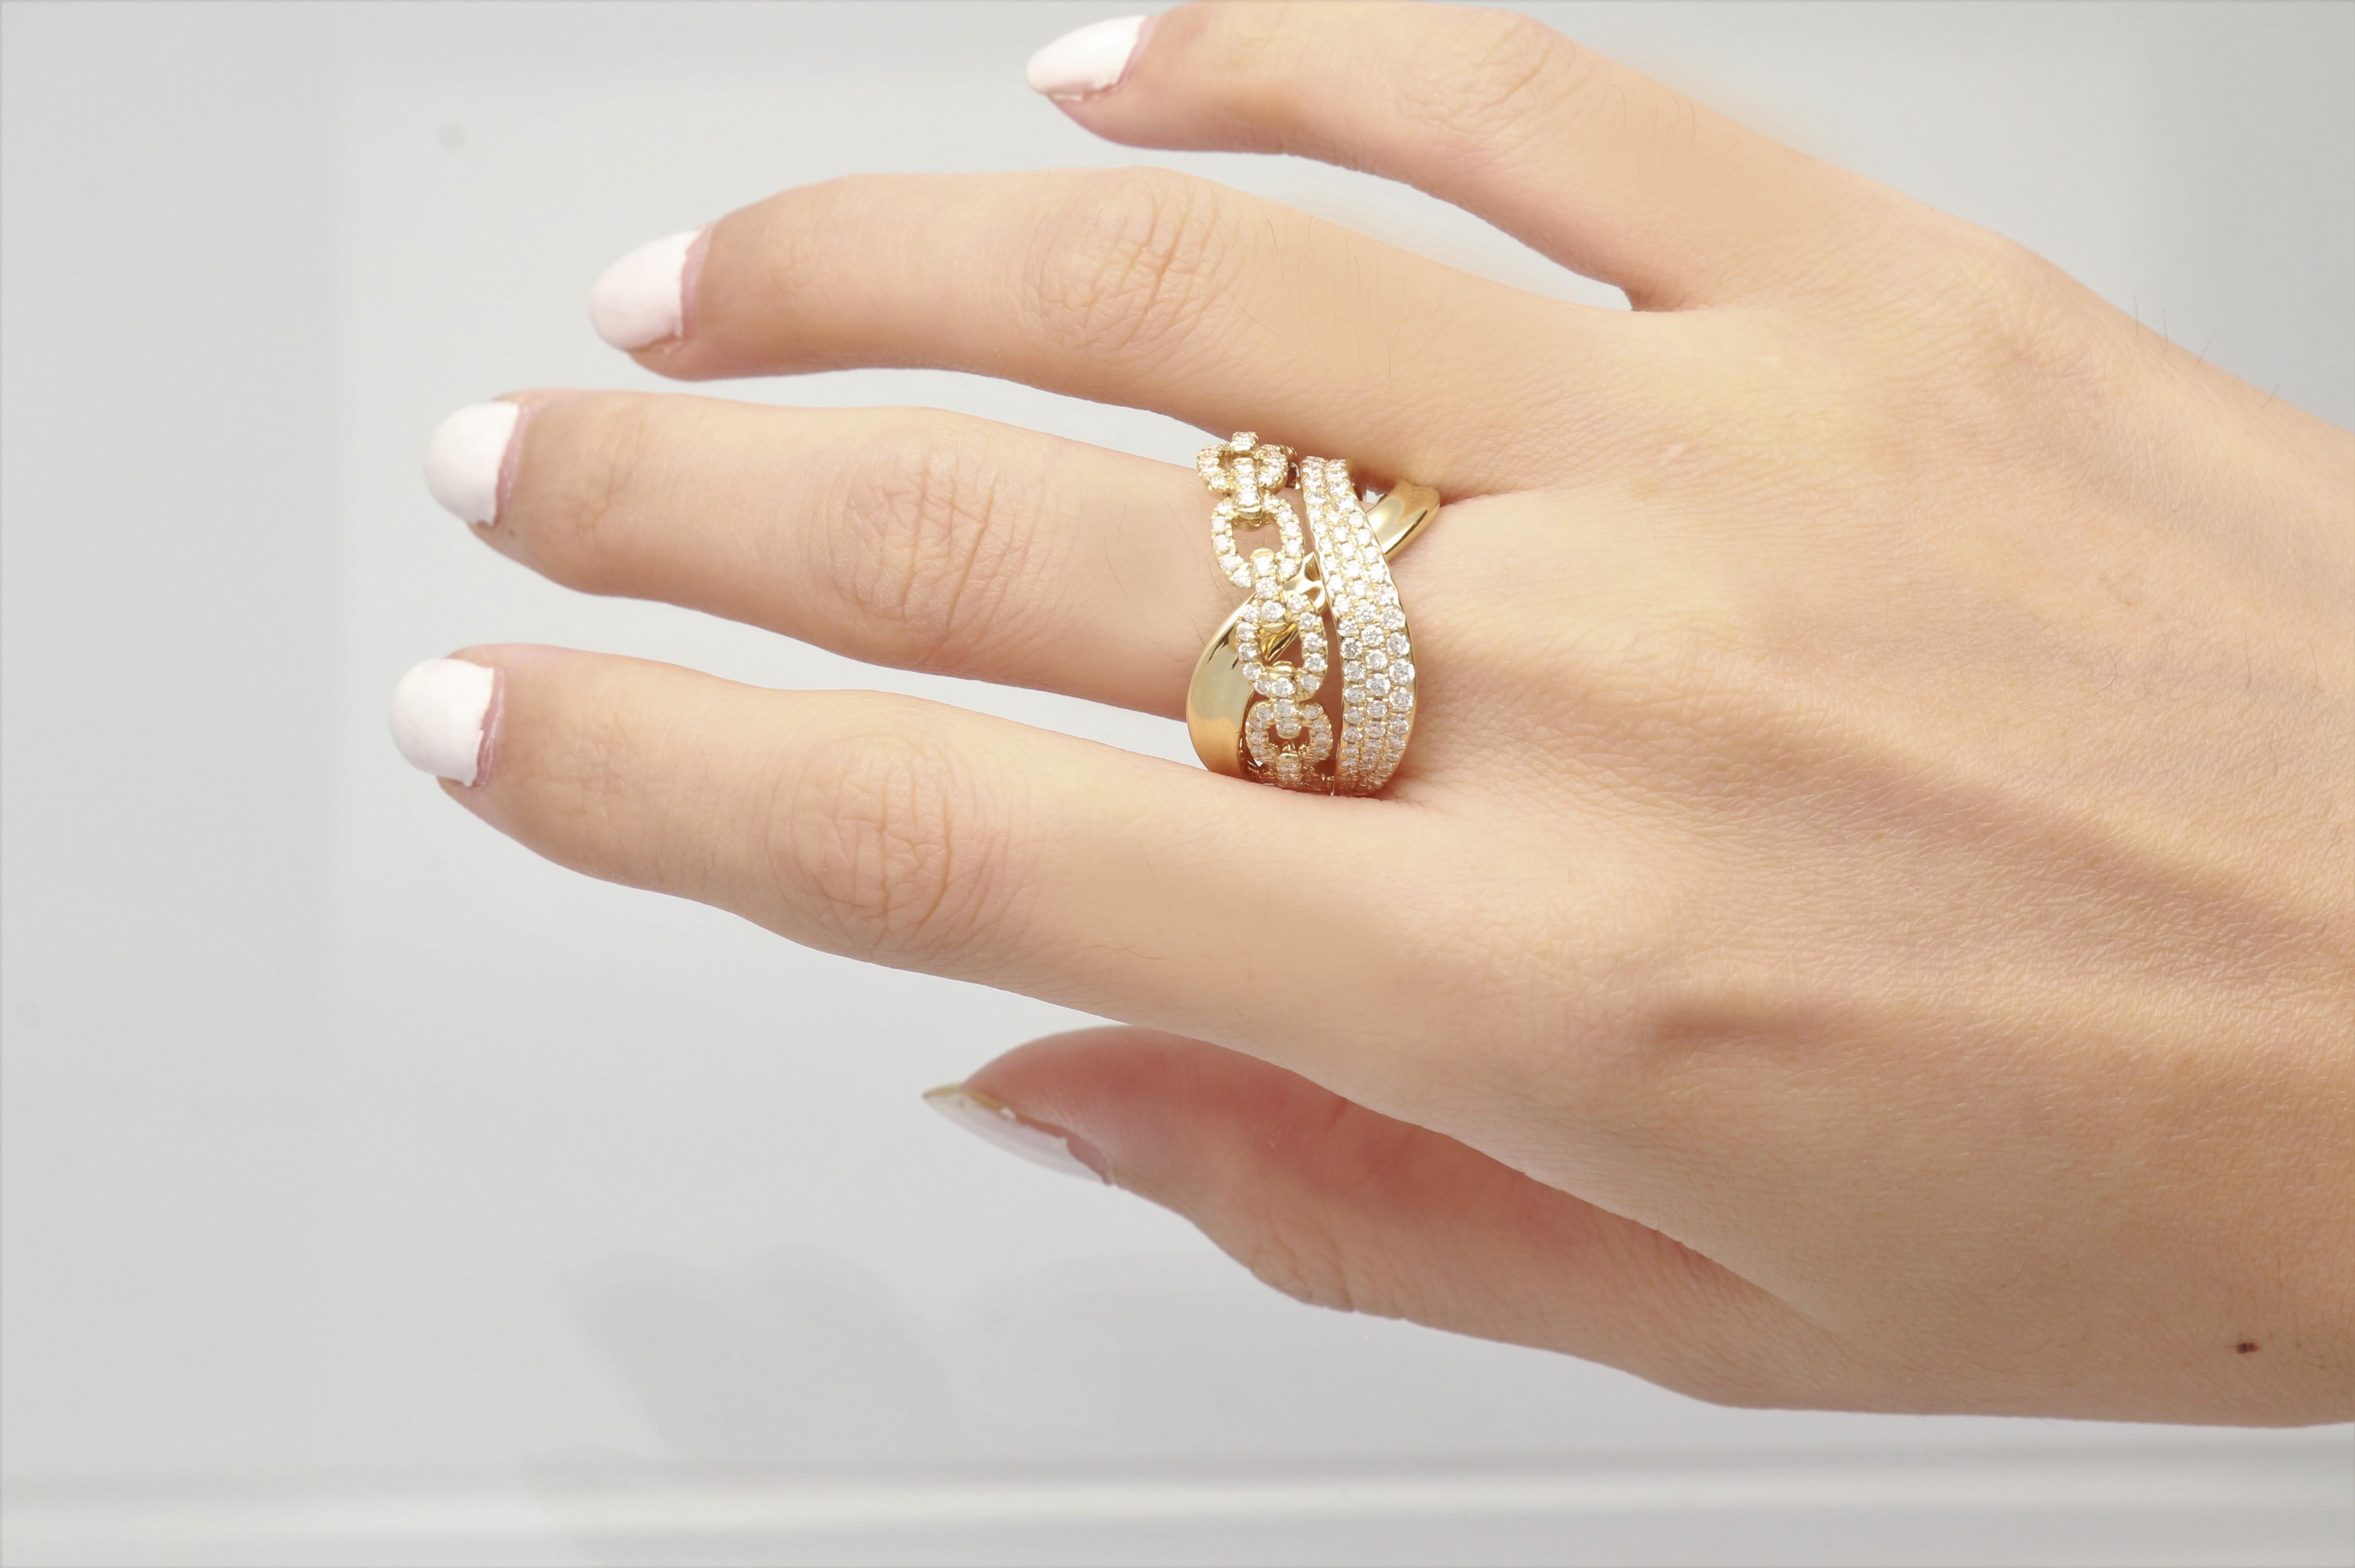 Schmücken Sie sich mit Eleganz mit diesem Ring aus 18-karätigem Gelbgold von Gin & Grace. Dieser Ring besteht aus weißen Diamanten im Rundschliff (146 Stück) mit 1,27 Karat. Dieser Ring wiegt 9.52 Gramm. Dieser zarte Ring ist auf Hochglanz poliert.